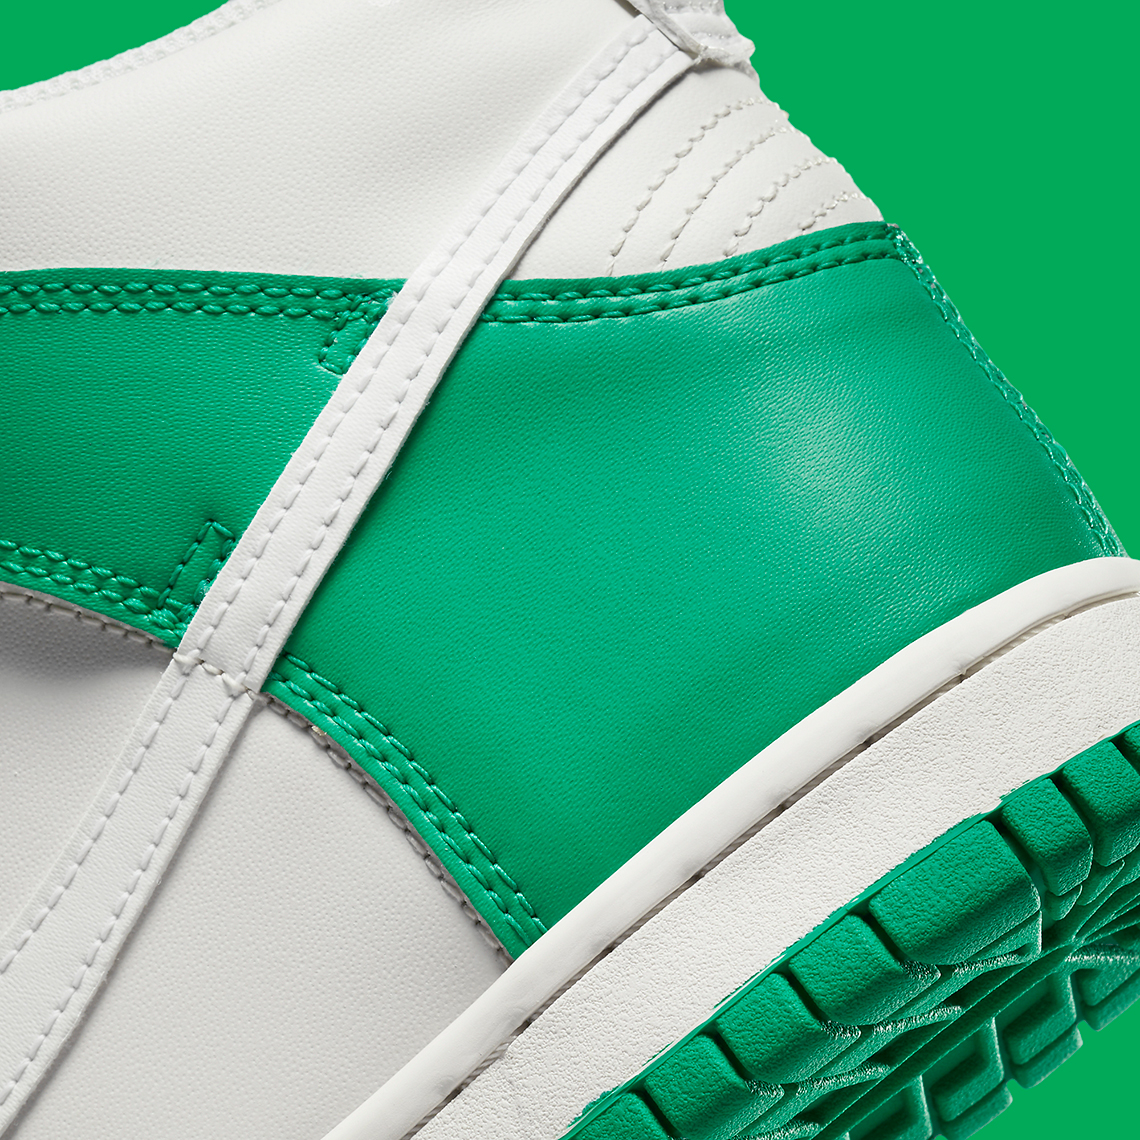 Nike Dunk High Gs White Green Db2179 002 5